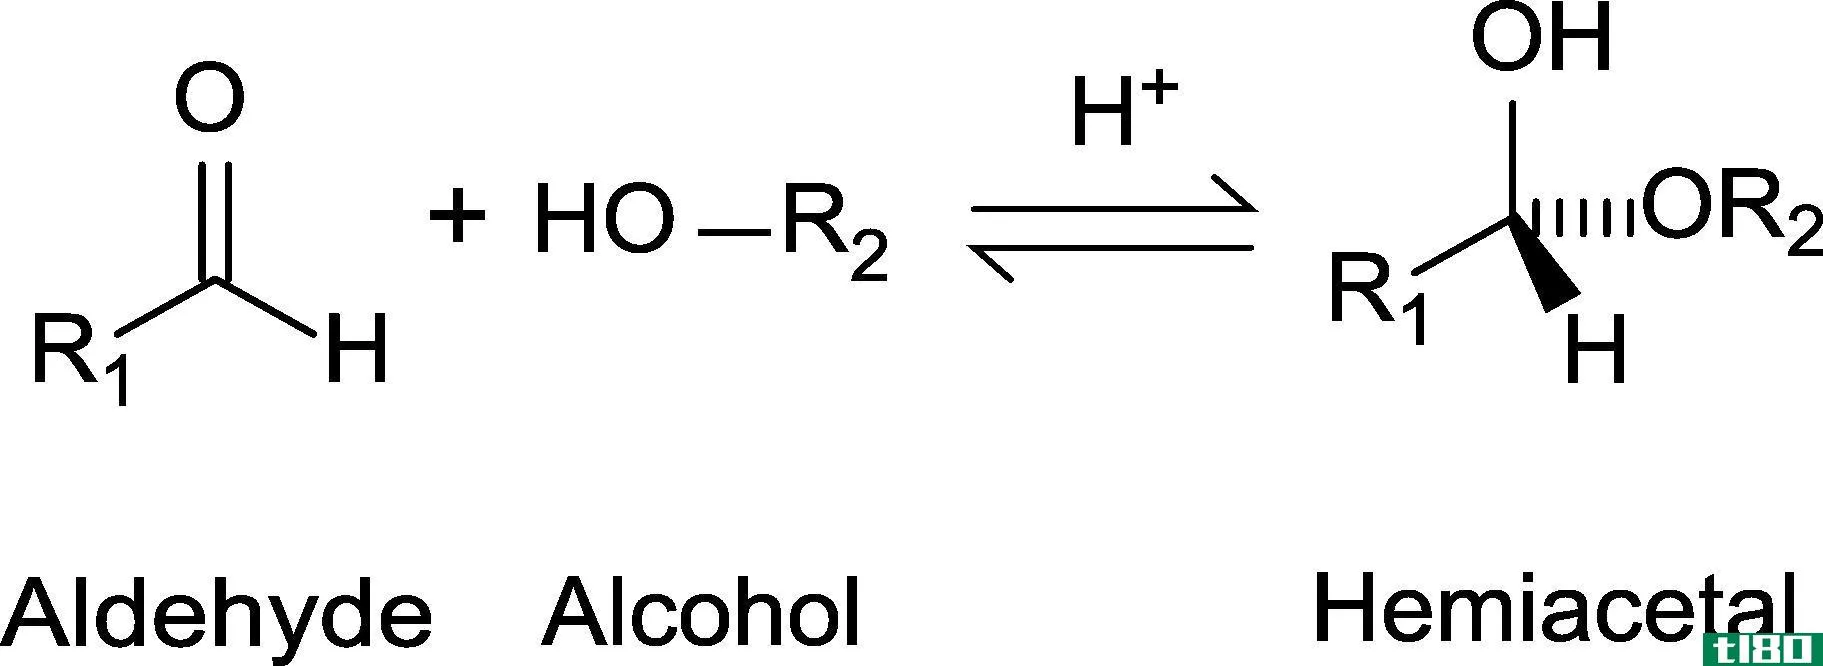 缩醛(acetal)和半缩醛(hemiacetal)的区别